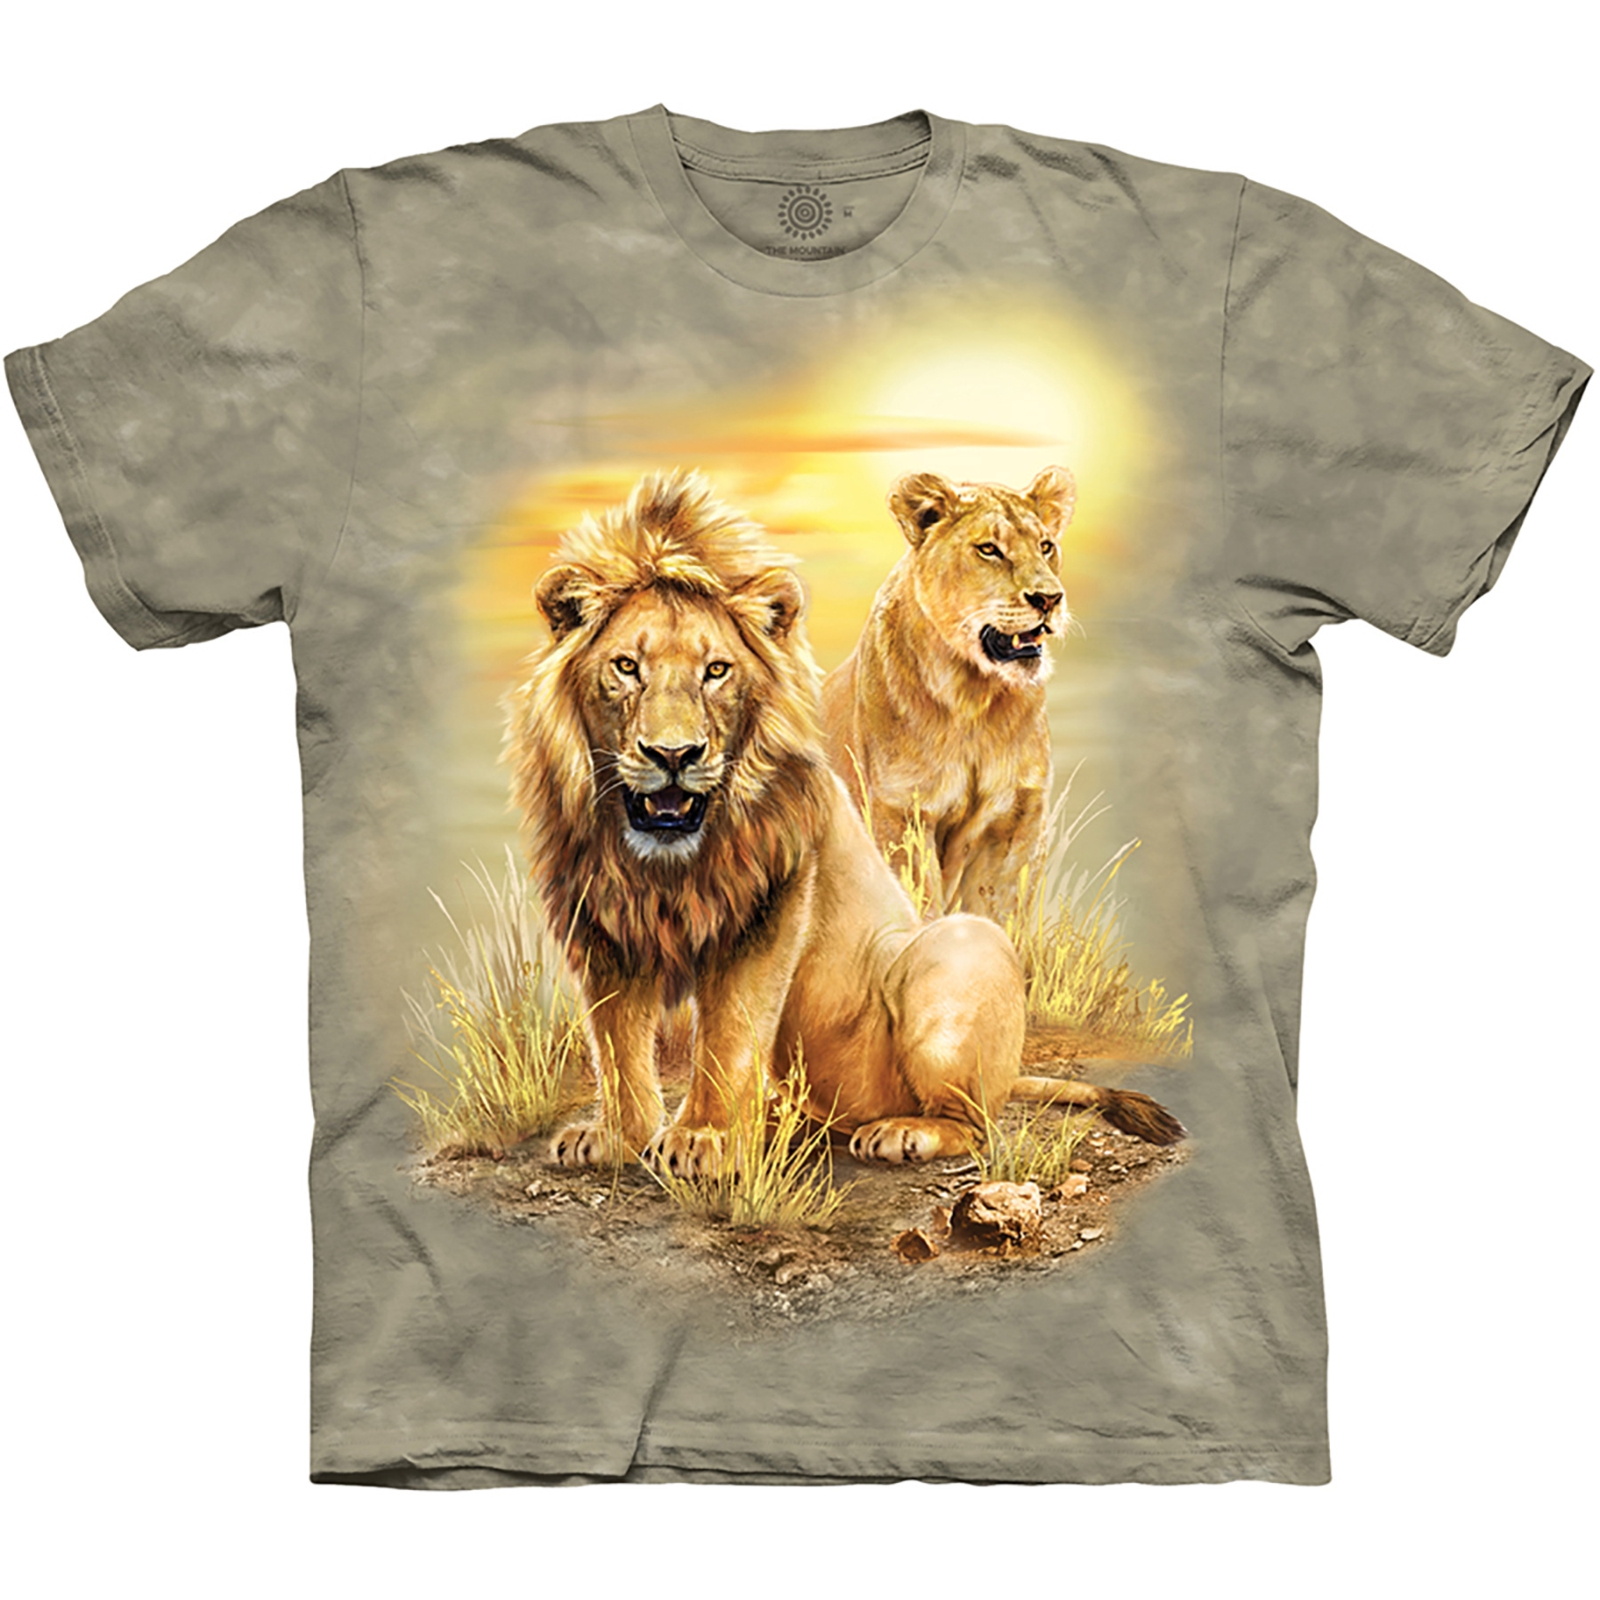 The Mountain Roaring Lion Long Sleeve T-Shirt (Sm - 3X)   (CLONE)